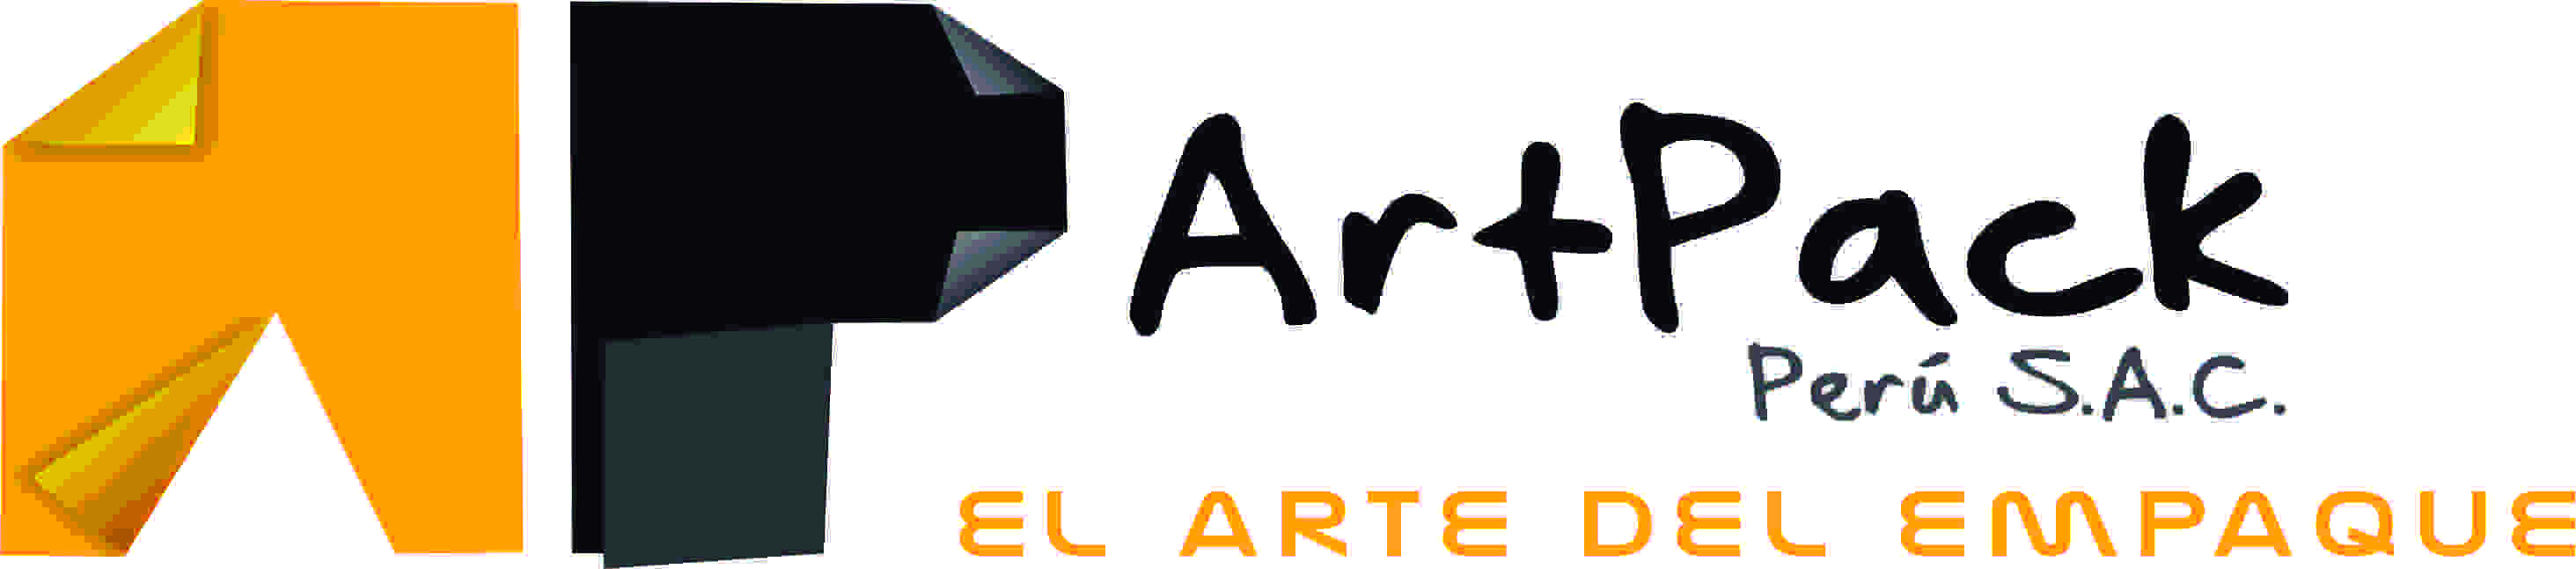 Artpack Perú S.A.C. logo